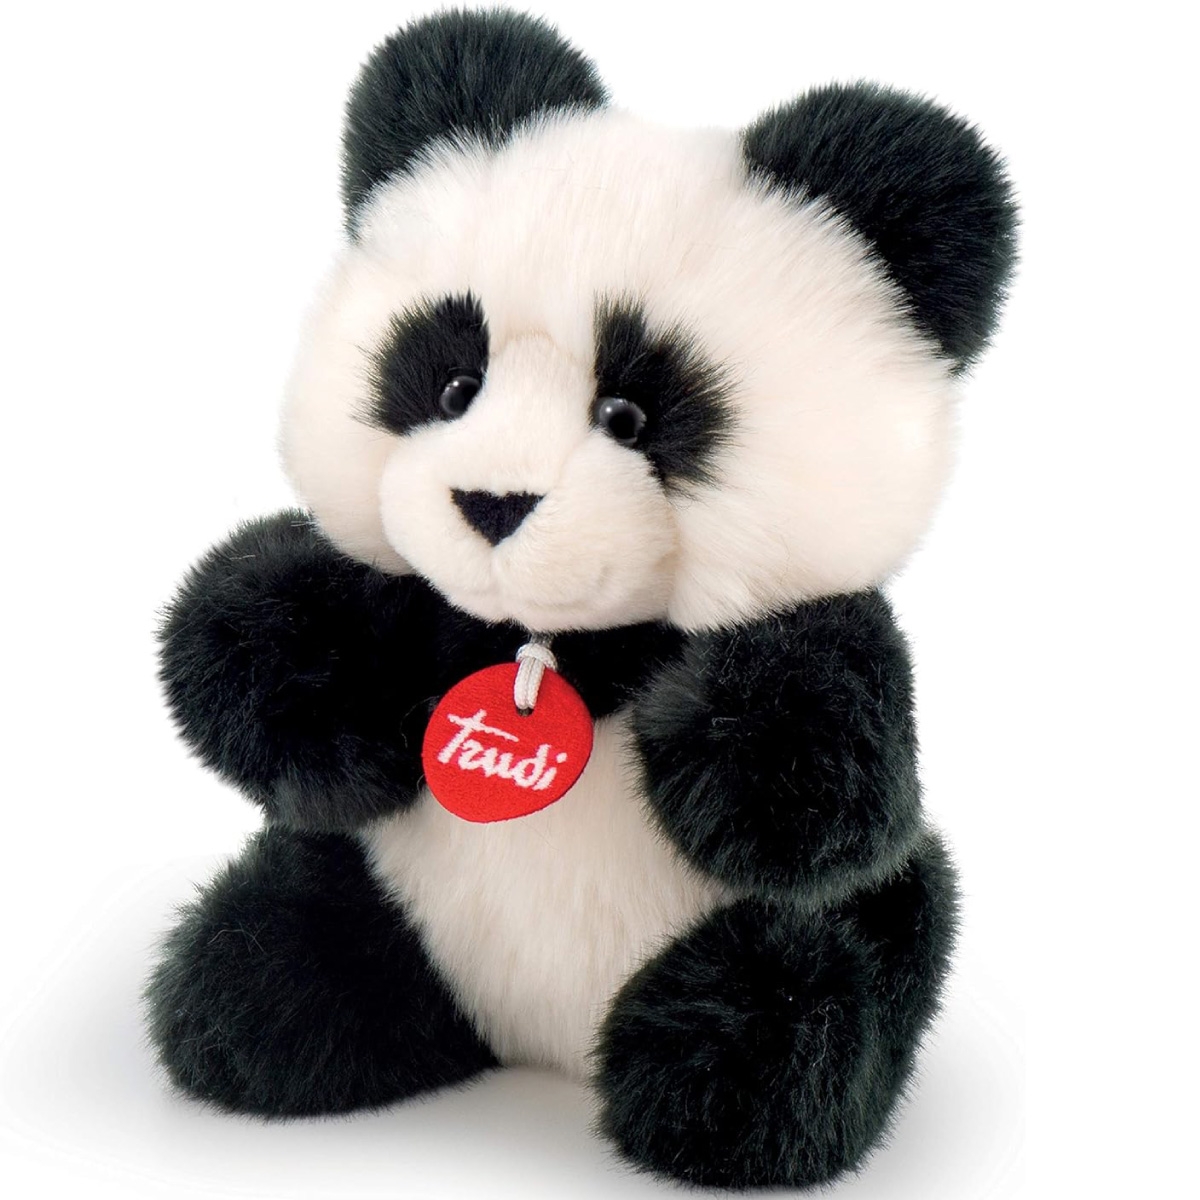 TRUDI Panda Fluffy - Peluche Fluffies 24cm a 29,99 €